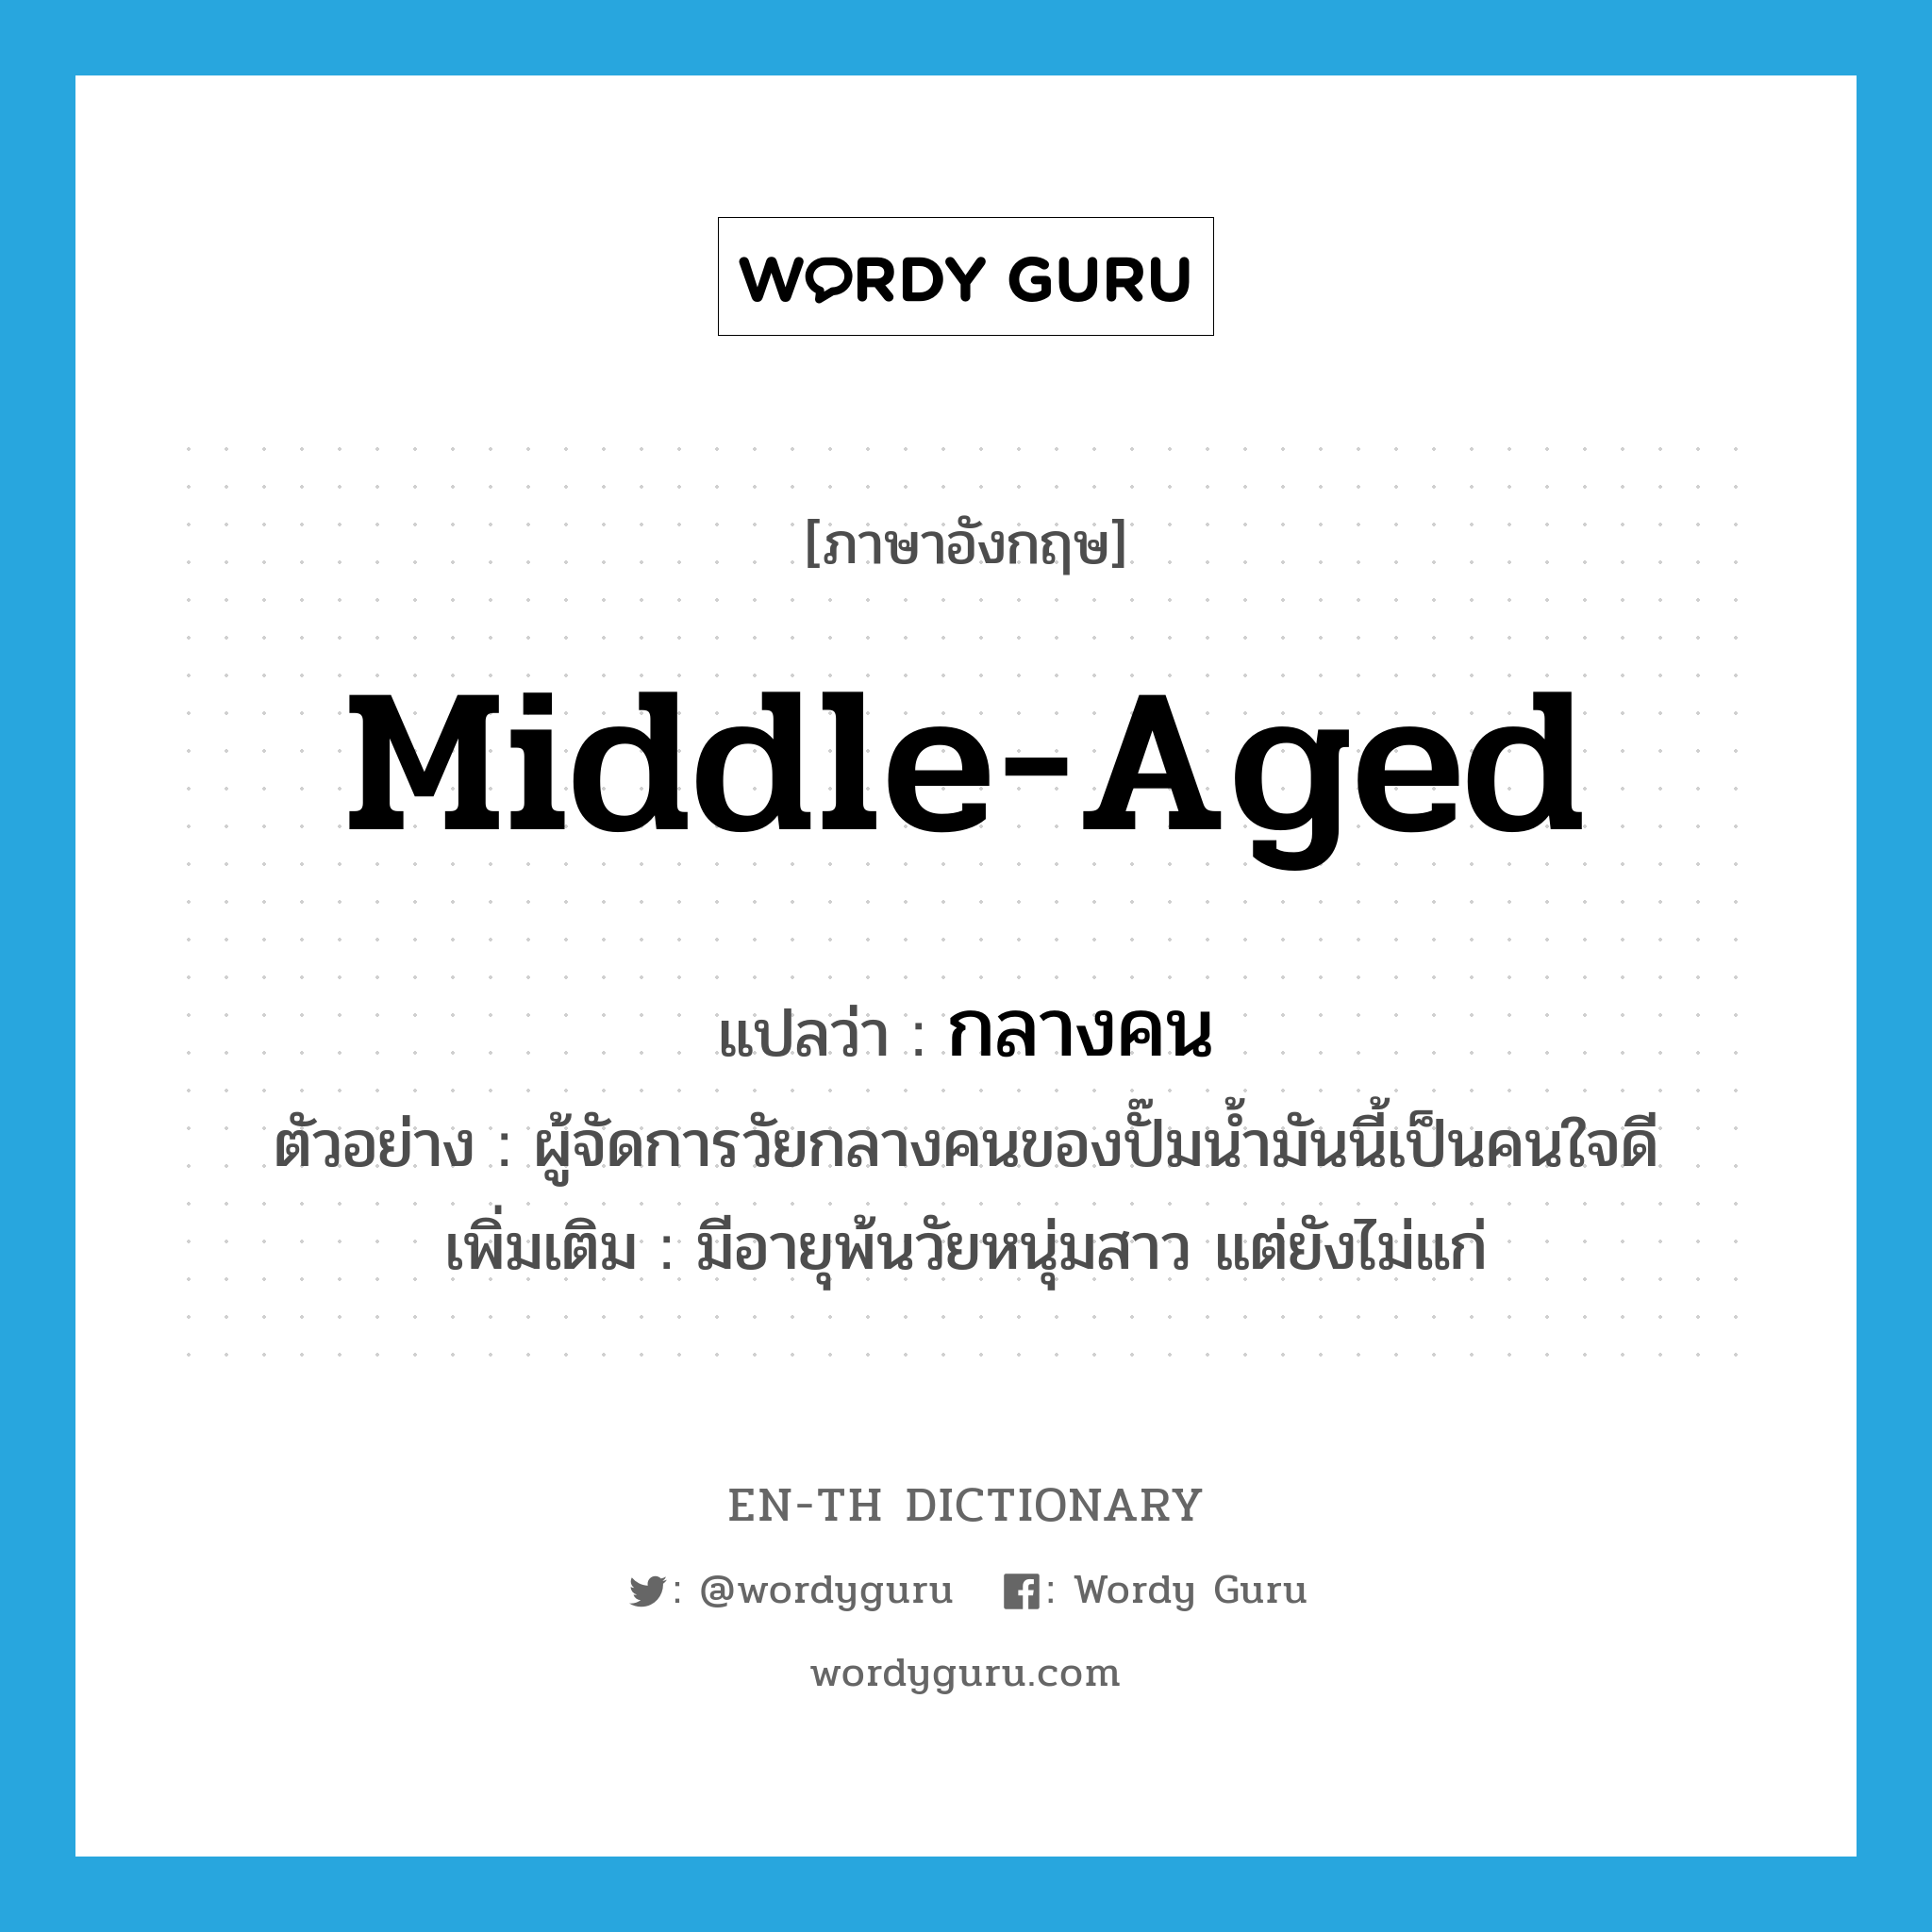 middle-aged แปลว่า?, คำศัพท์ภาษาอังกฤษ middle-aged แปลว่า กลางคน ประเภท ADJ ตัวอย่าง ผู้จัดการวัยกลางคนของปั๊มน้ำมันนี้เป็นคนใจดี เพิ่มเติม มีอายุพ้นวัยหนุ่มสาว แต่ยังไม่แก่ หมวด ADJ